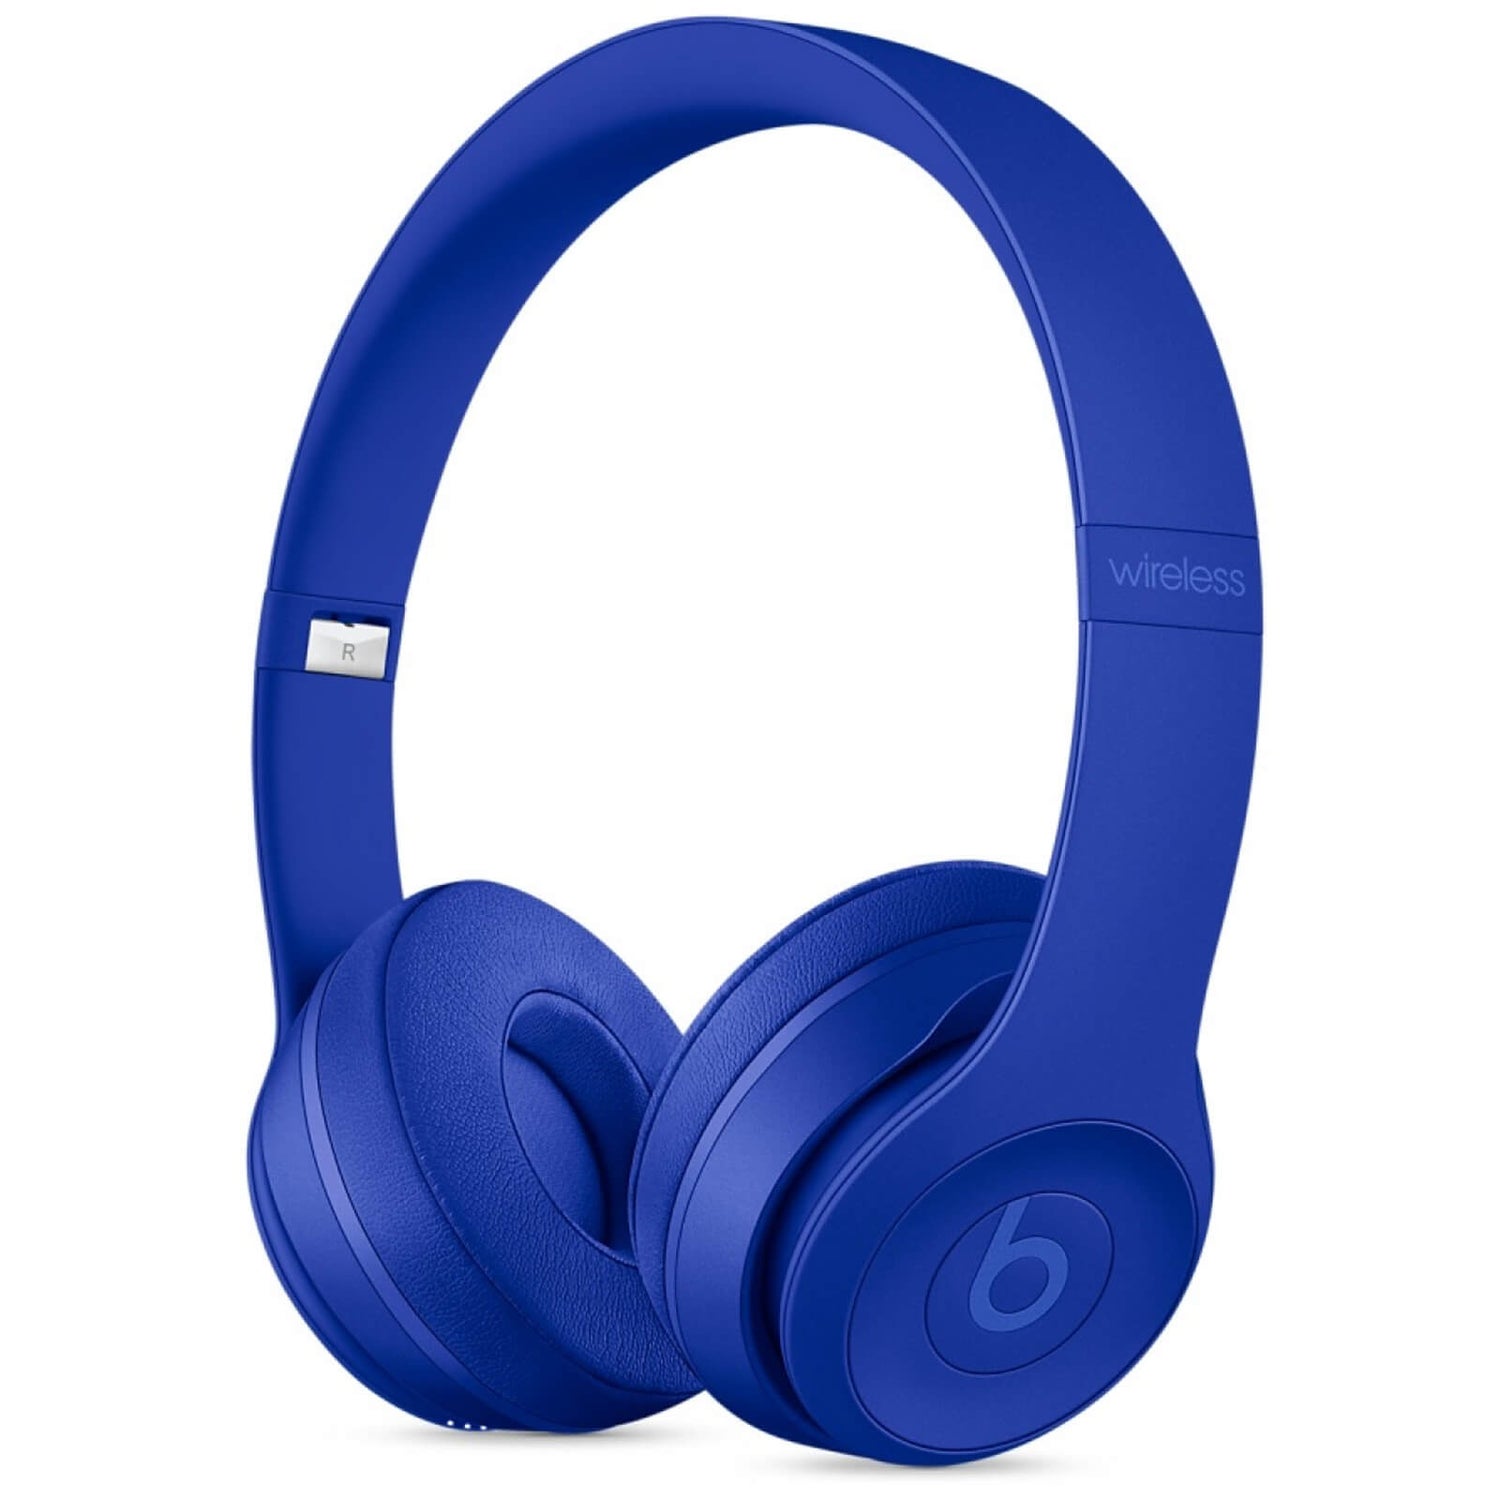 Beats by Dr. Dre Solo3 Wireless Bluetooth On-Ear Headphones - Break Blue